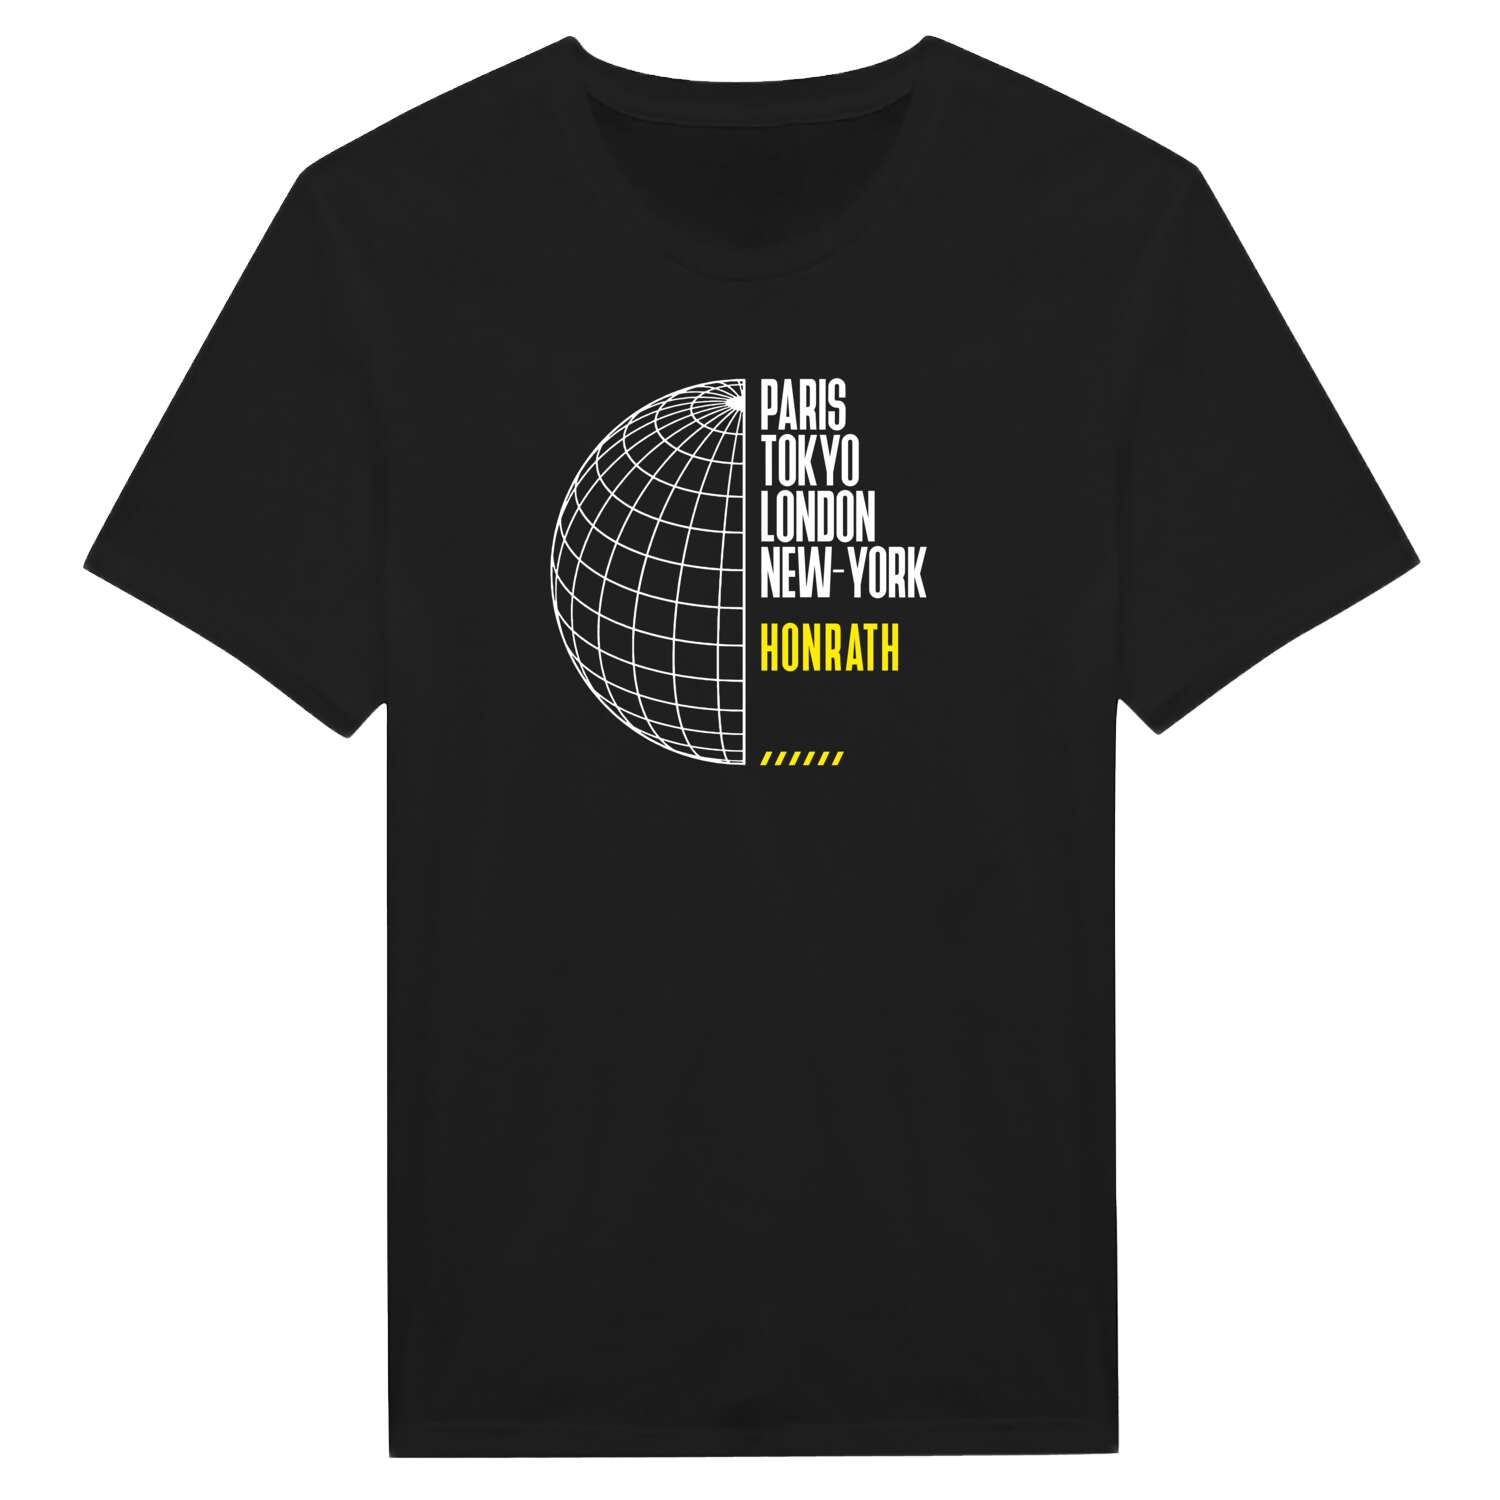 Honrath T-Shirt »Paris Tokyo London«